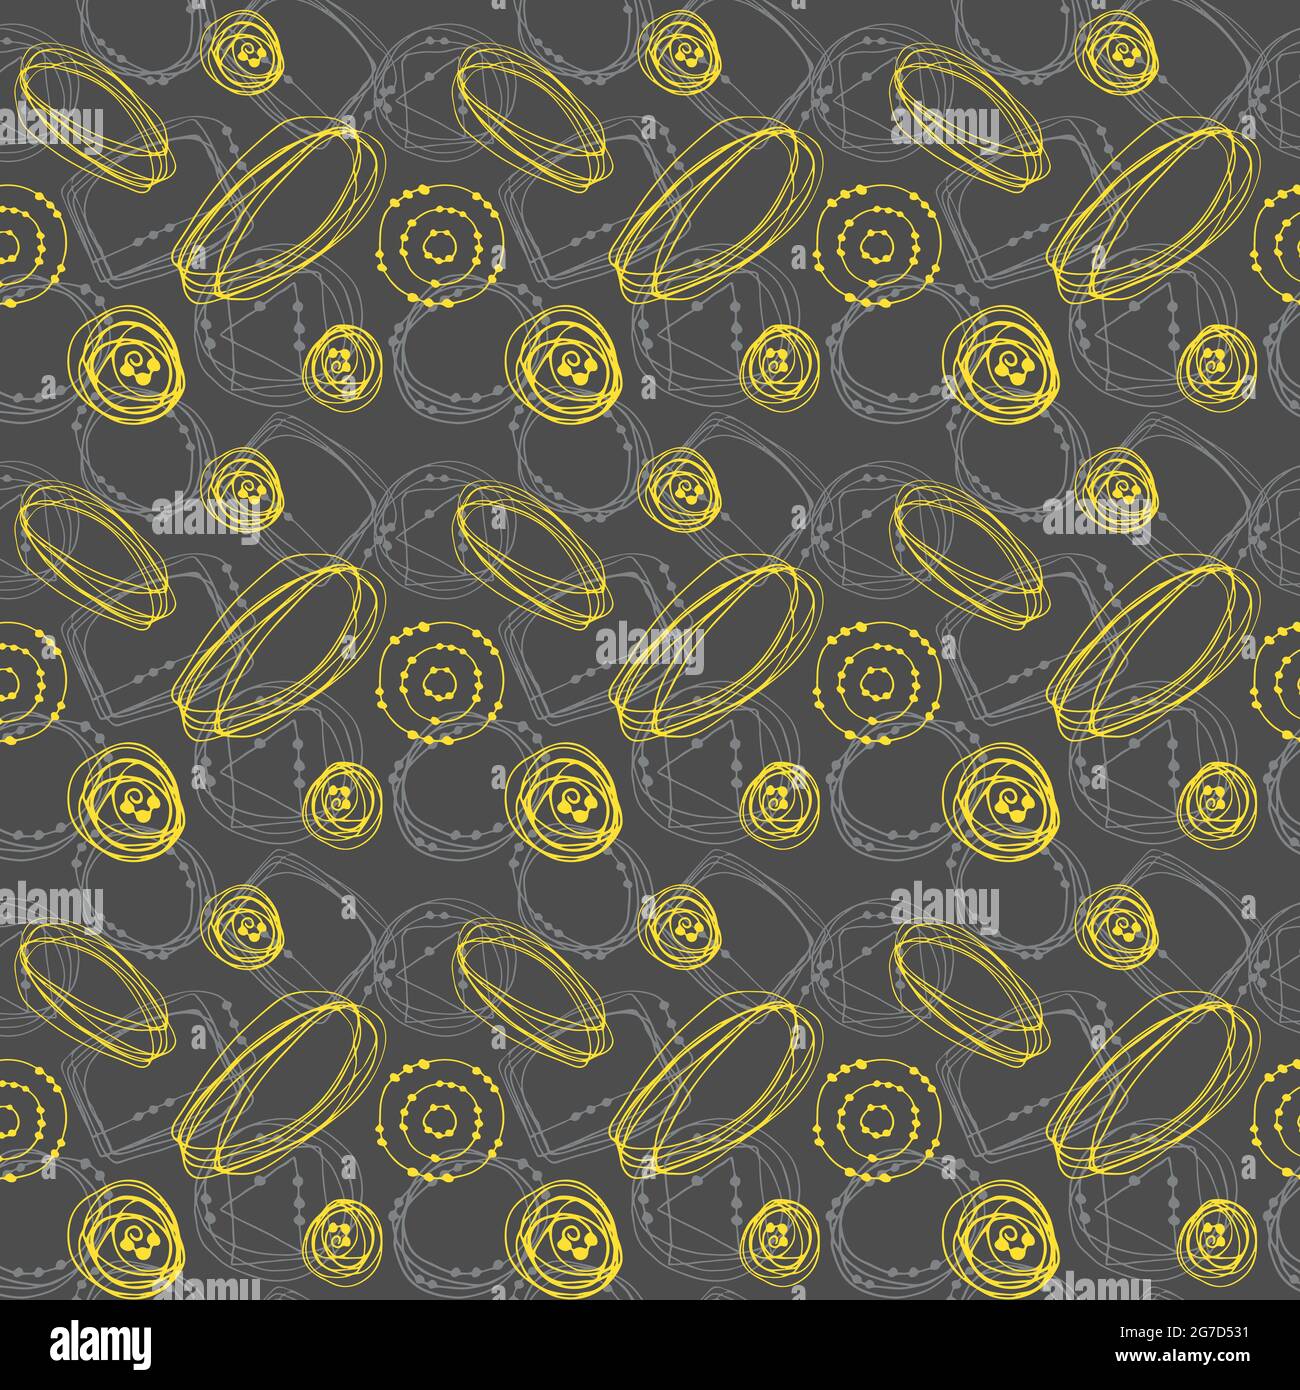 Motif de gribouillages abstraits sans couture, dessin à la main, gribouilles de couleur jaune et grise, fond gris. Illustration vectorielle Illustration de Vecteur